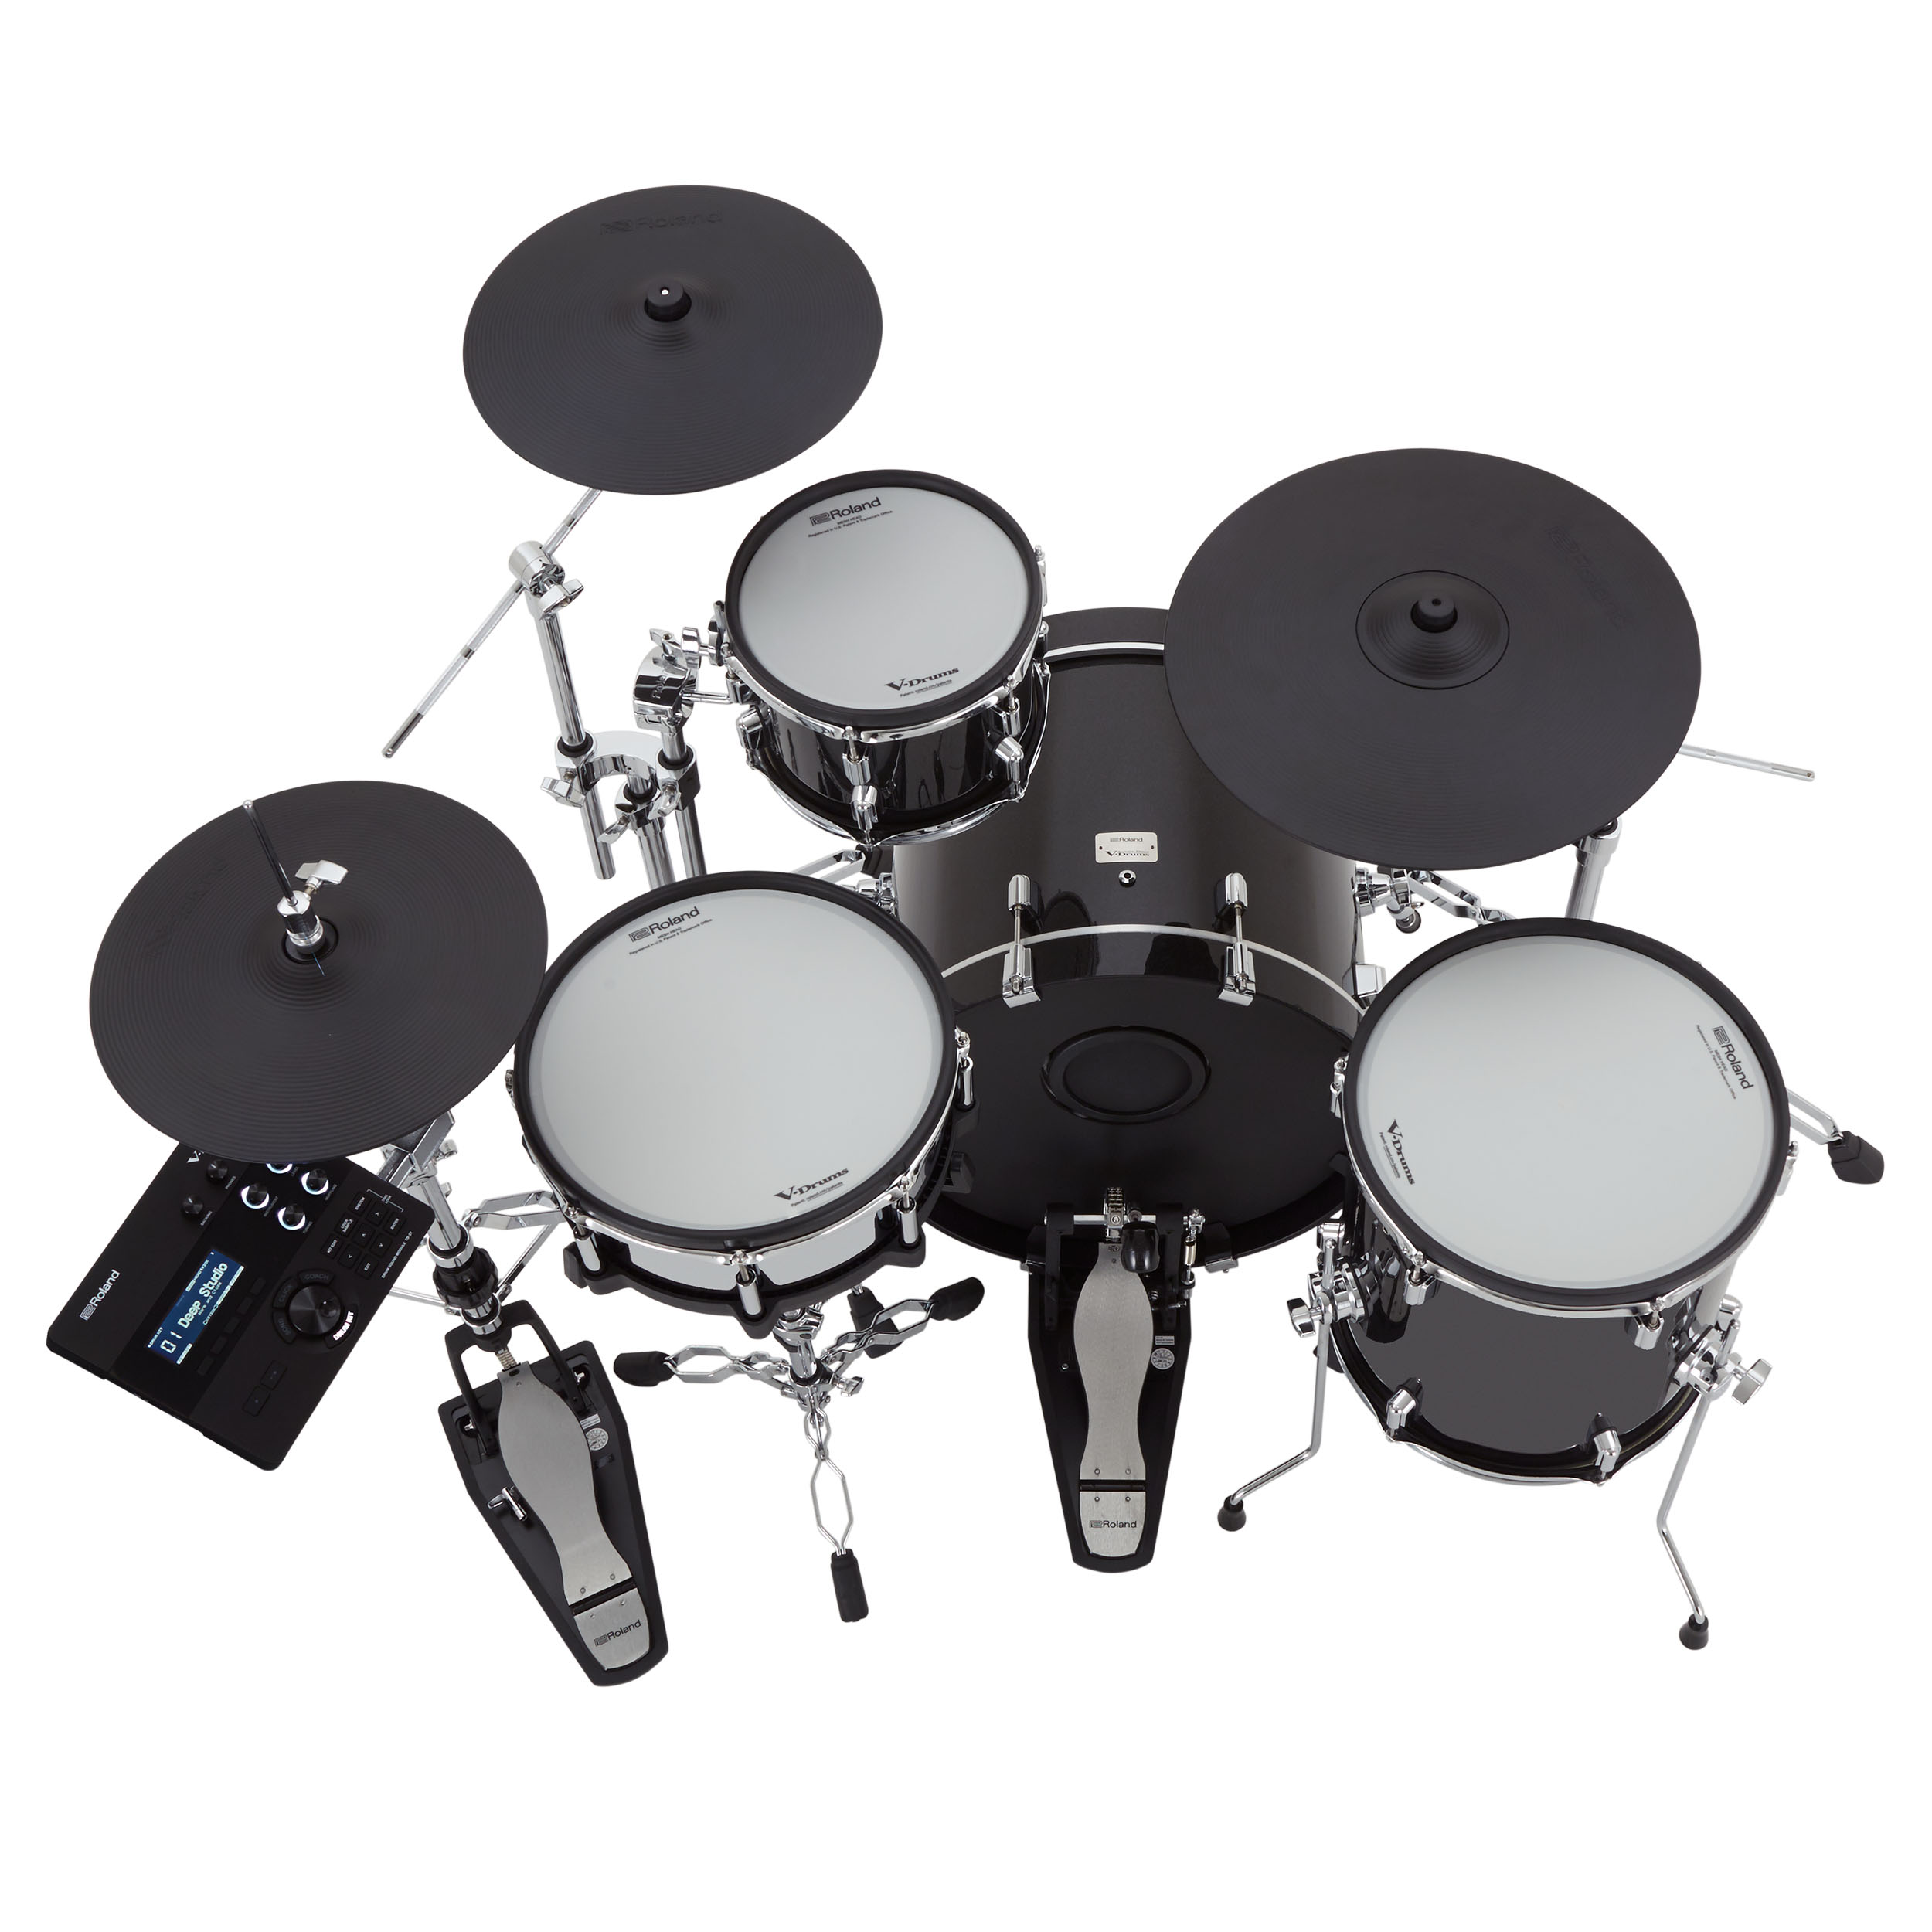 Roland Vad 504 V-drums Acoustic Design 5 Futs - Batería electrónica completa - Variation 3